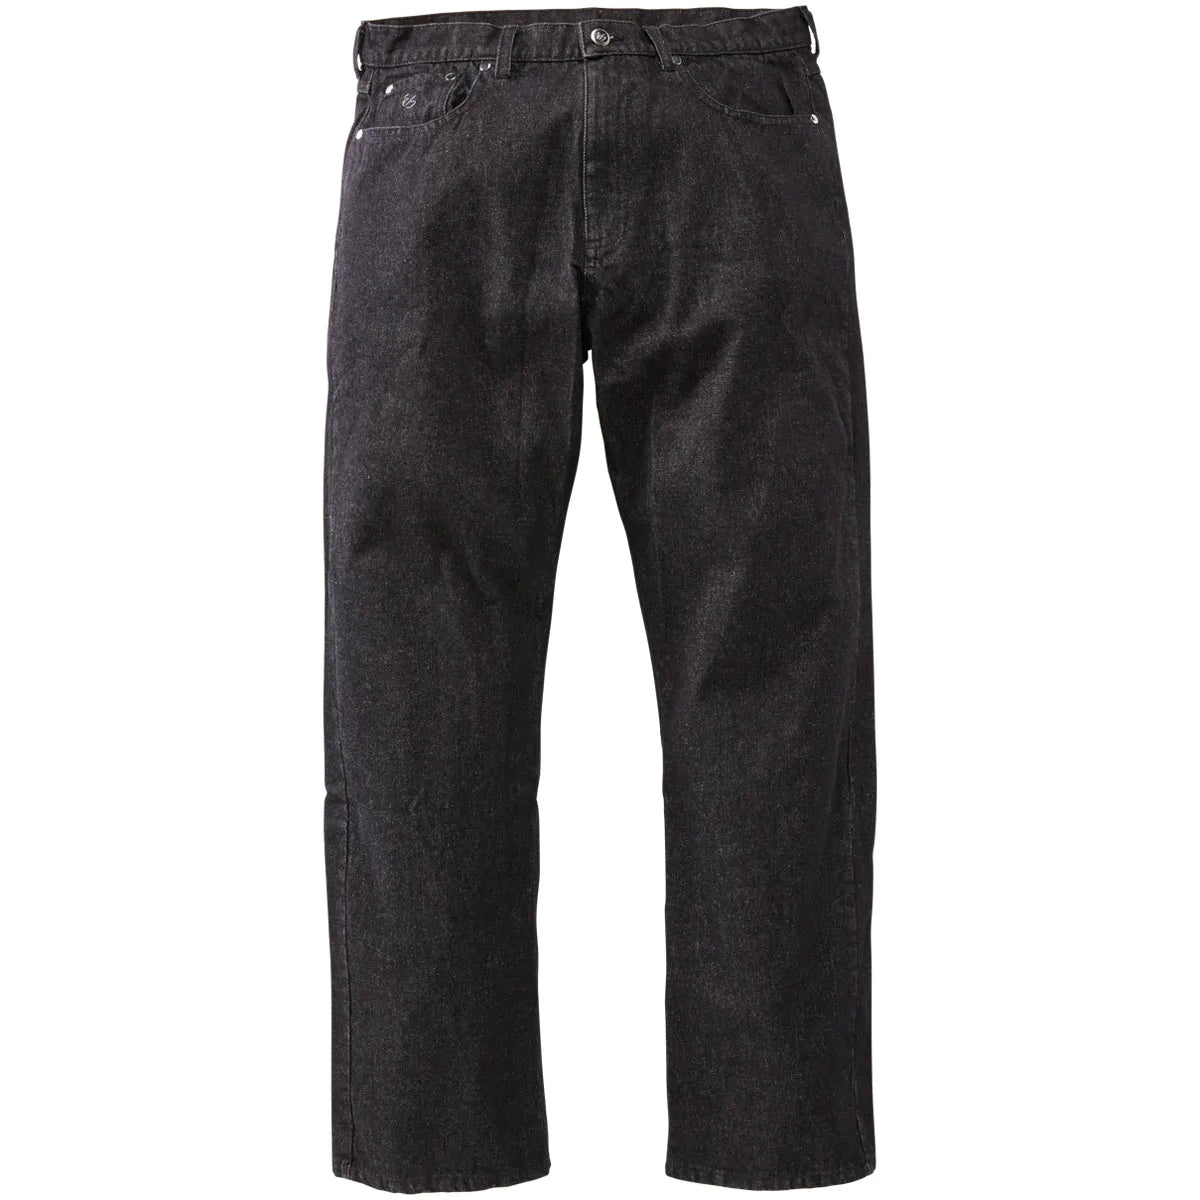 eS Baggy Denim Jeans - Black Wash image 1